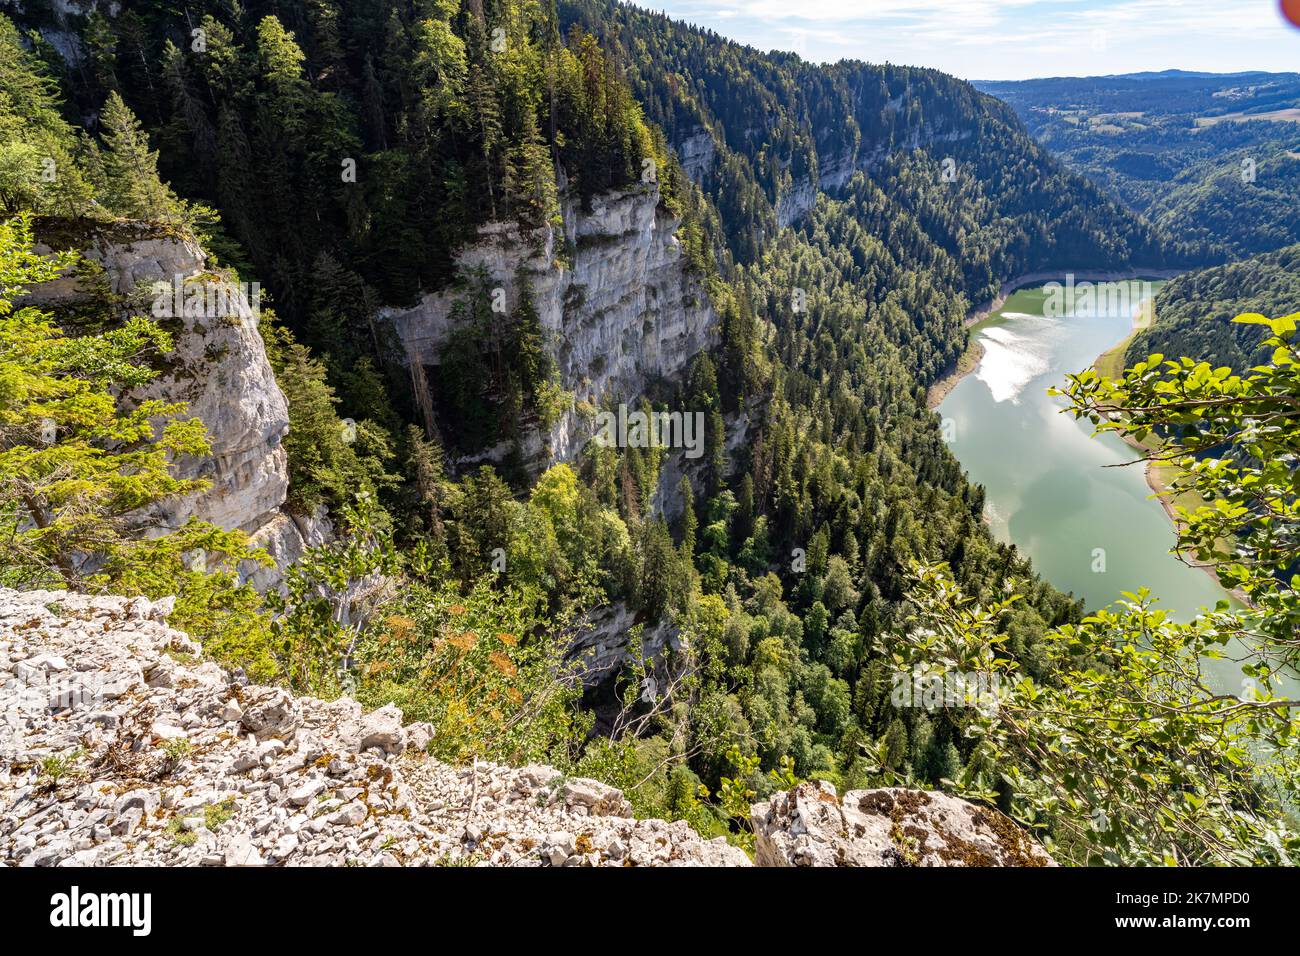 Der Doubs Stausee Lac des Moron zwischen der Schweiz und Frankreich, Europa |  Lac des Moron Doubs river reservoir between Switzerland and France, Eur Stock Photo